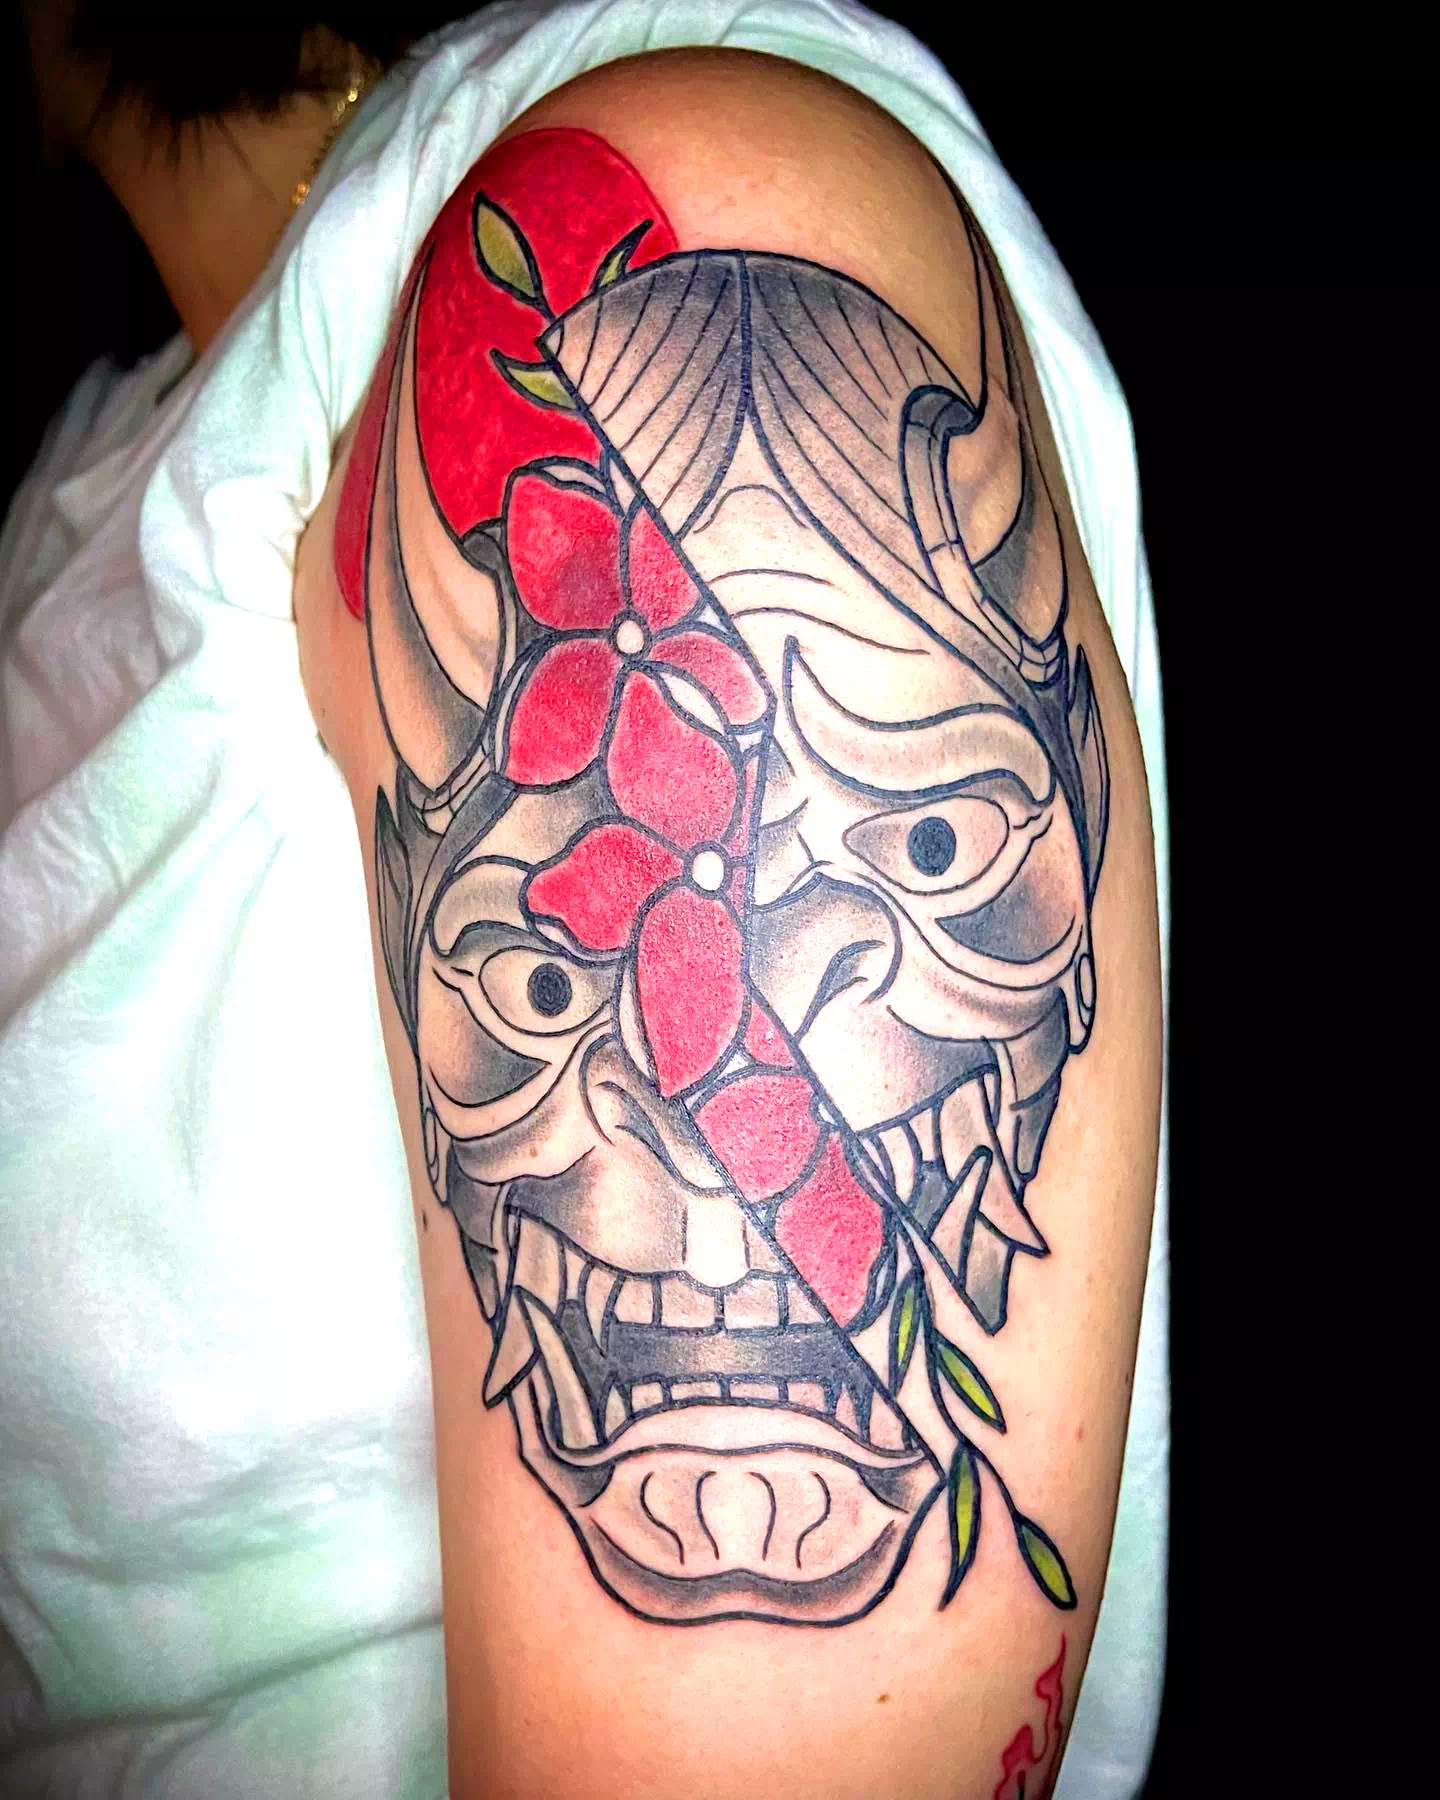 Split Face Oni Mask Tattoo Print